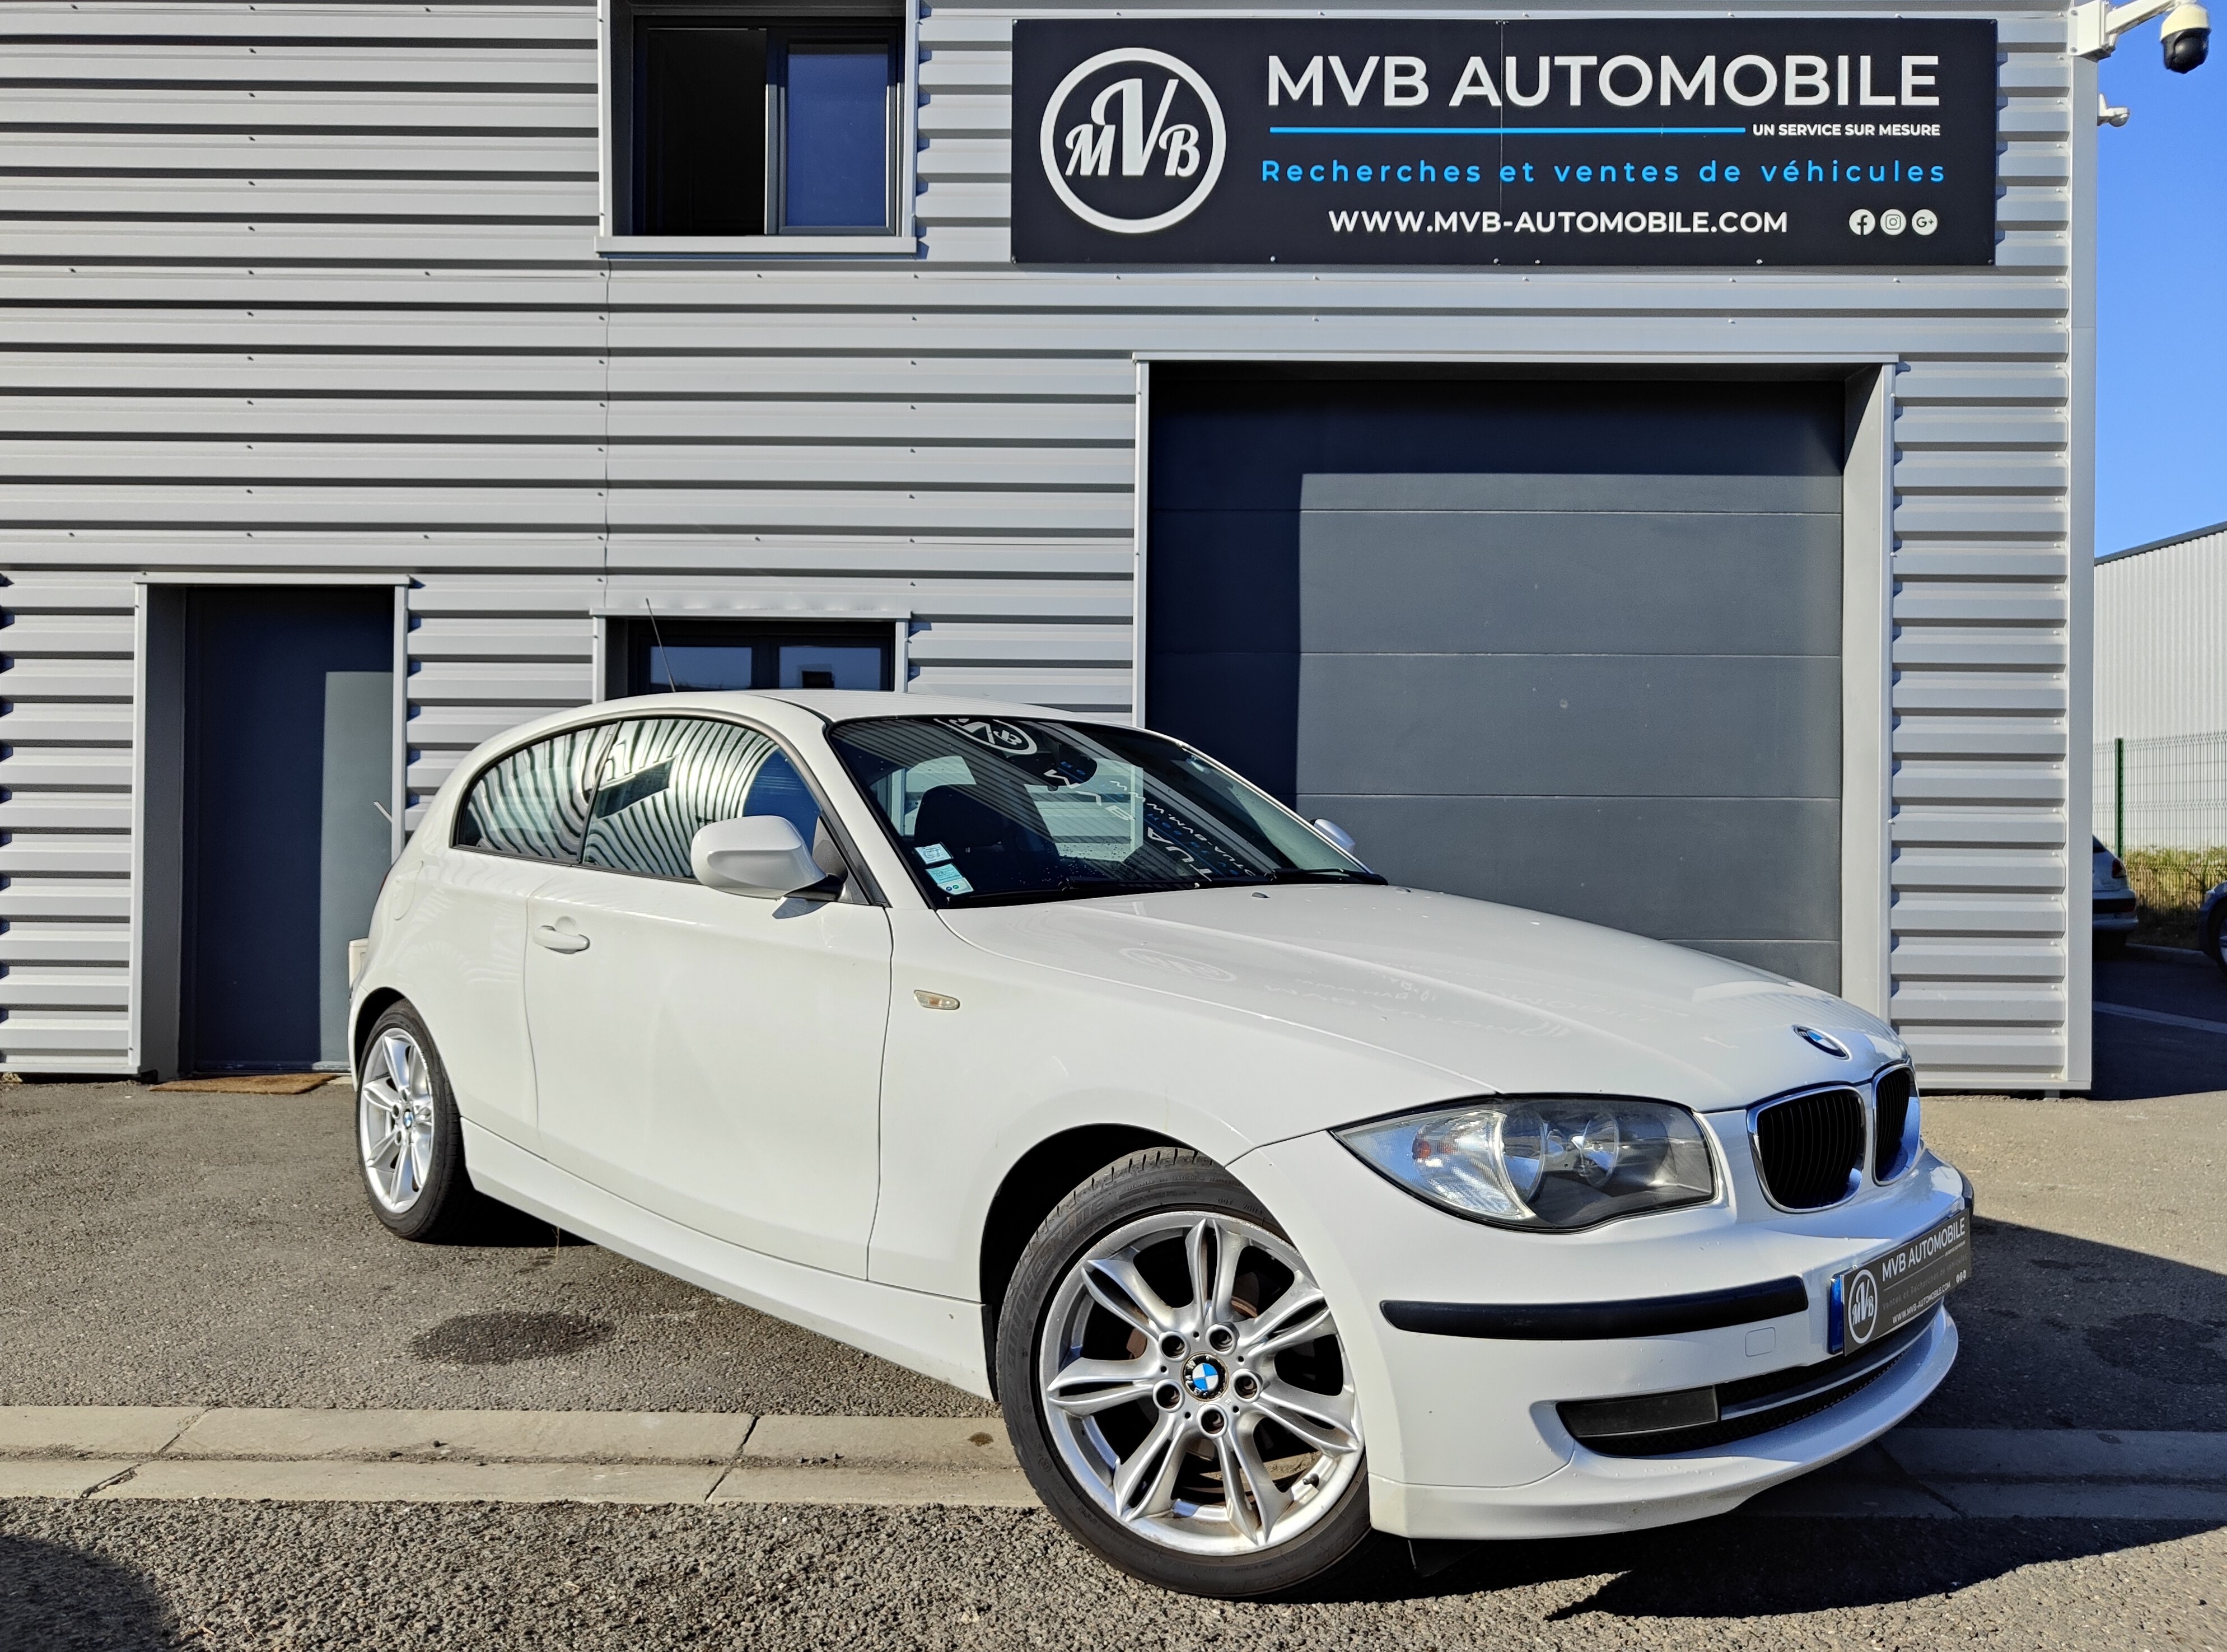 BMW Série 1 (E81) 118d 2.0 d 143cv Boîte automatique TBE vendue par vendue d'occasion par MVB Automobile Bordeaux